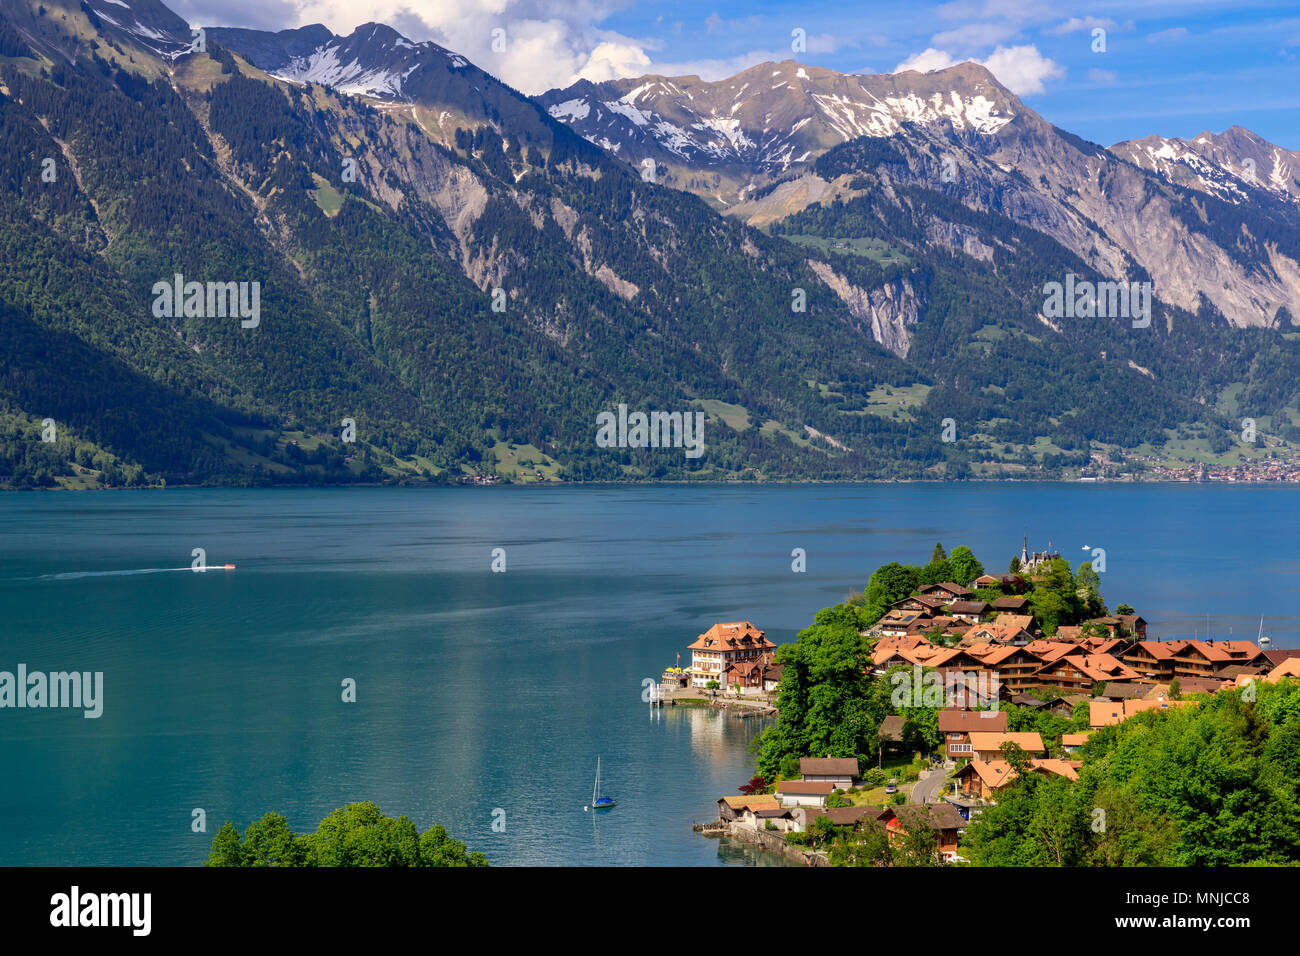 Il lago di Brienz con il villaggio Iseltwald, Oberland bernese, Svizzera Foto Stock